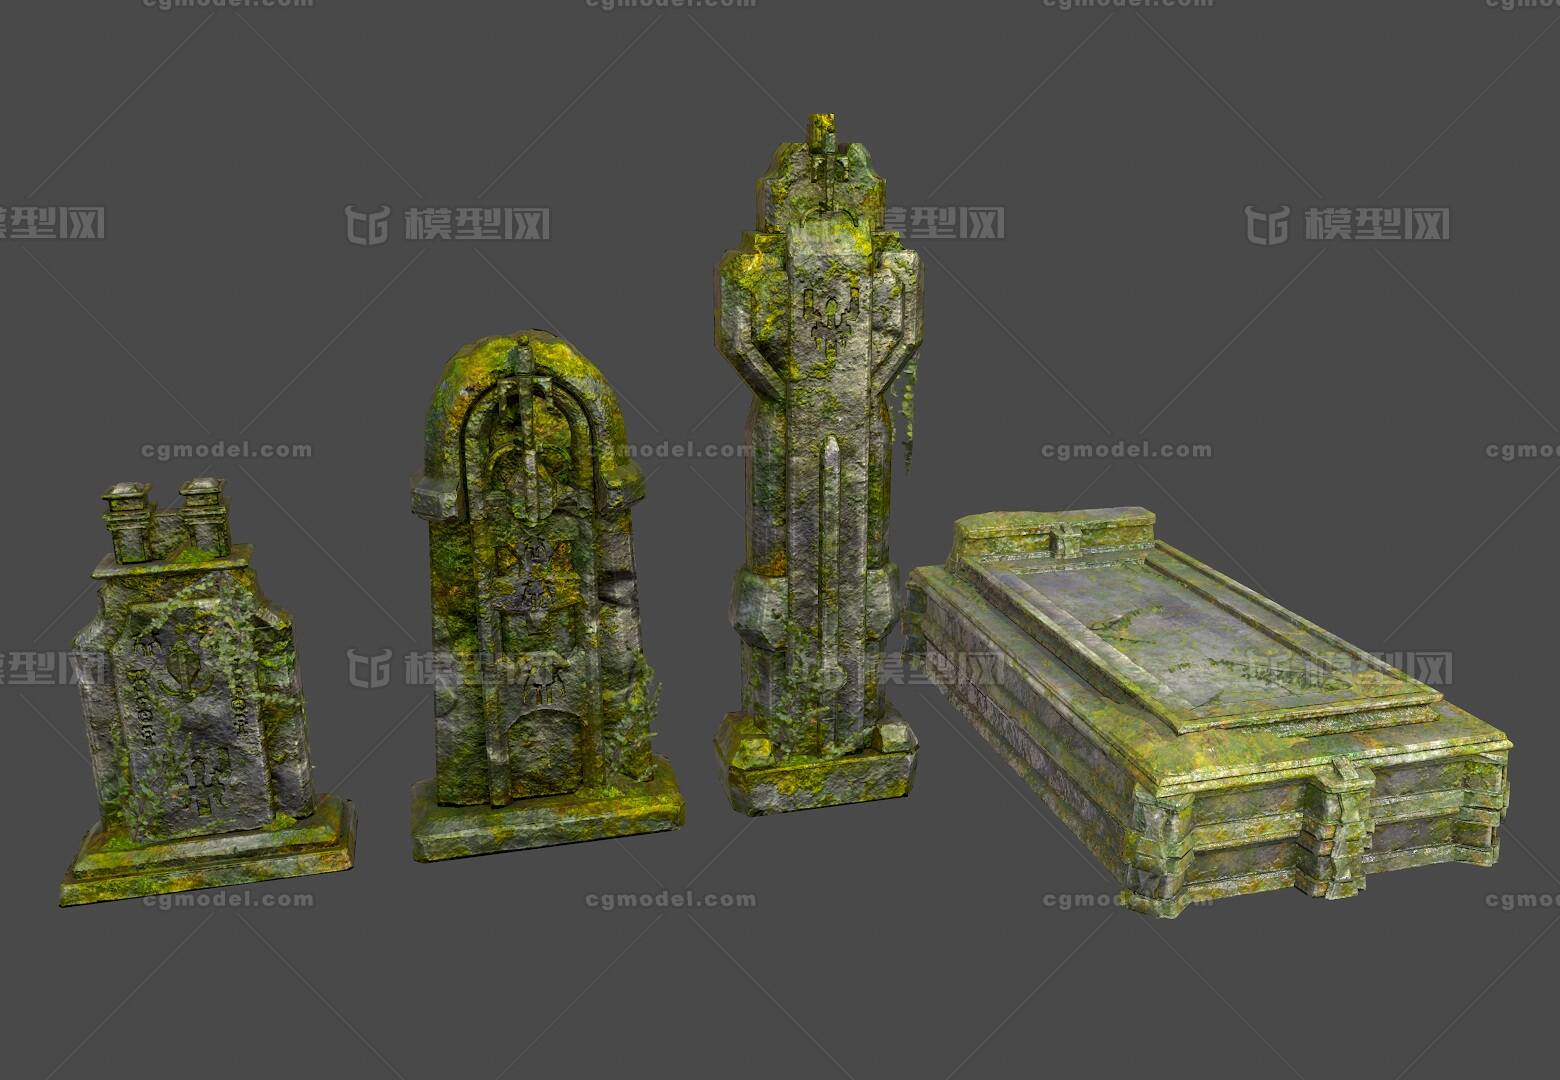 次时代低模 石墓碑模型-自然场景模型库-3ds Max(.max)模型下载-cg模型网